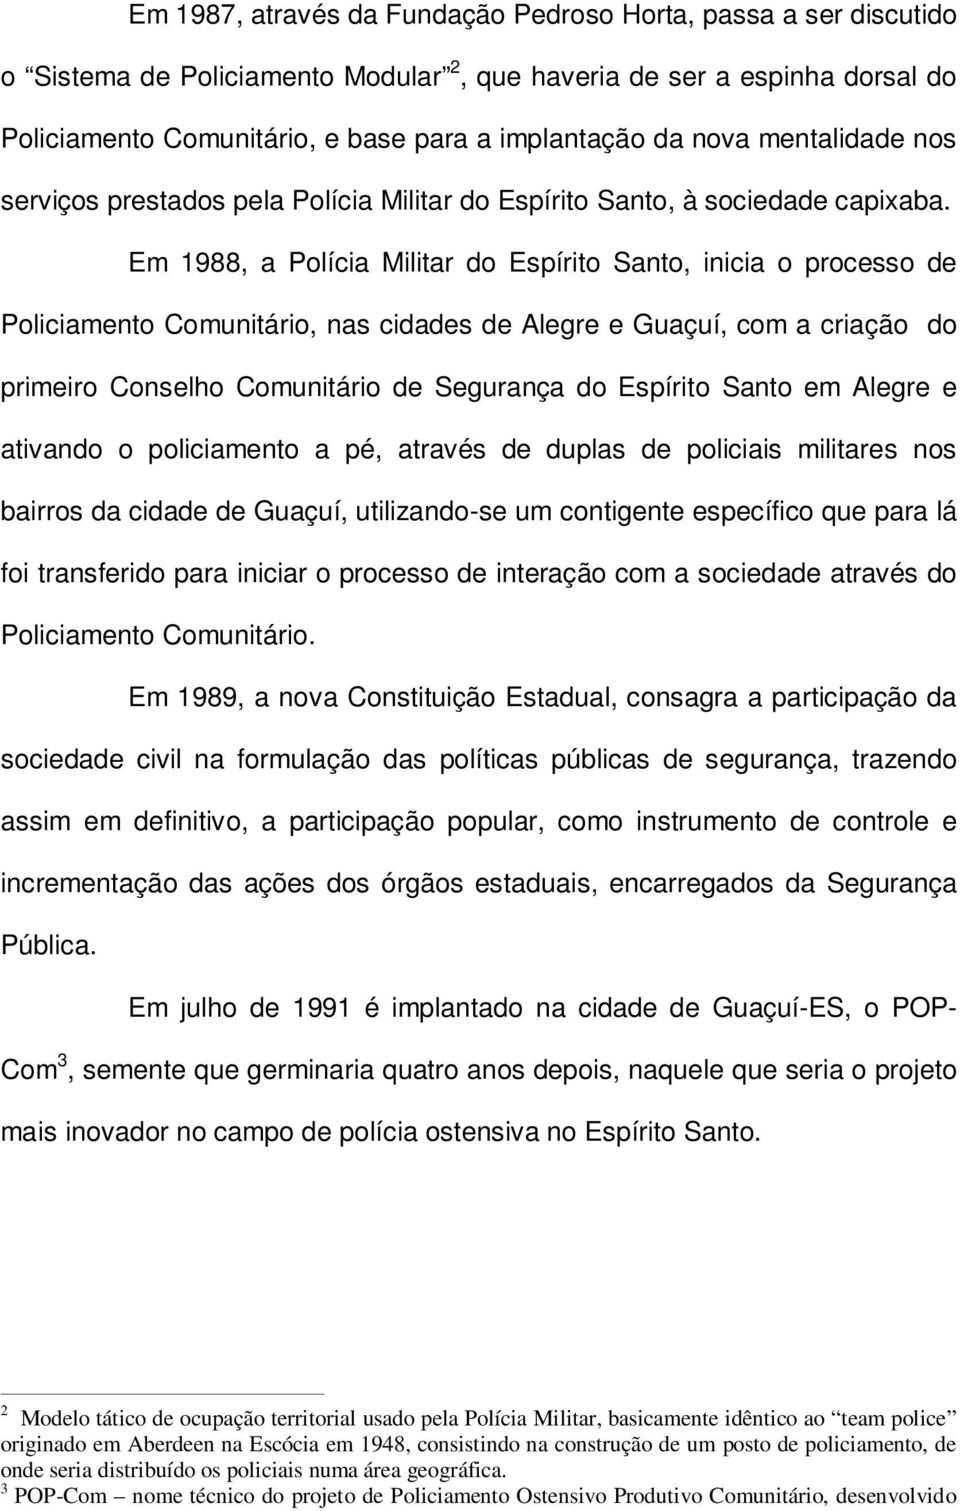 Em 1988, a Polícia Militar do Espírito Santo, inicia o processo de Policiamento Comunitário, nas cidades de Alegre e Guaçuí, com a criação do primeiro Conselho Comunitário de Segurança do Espírito